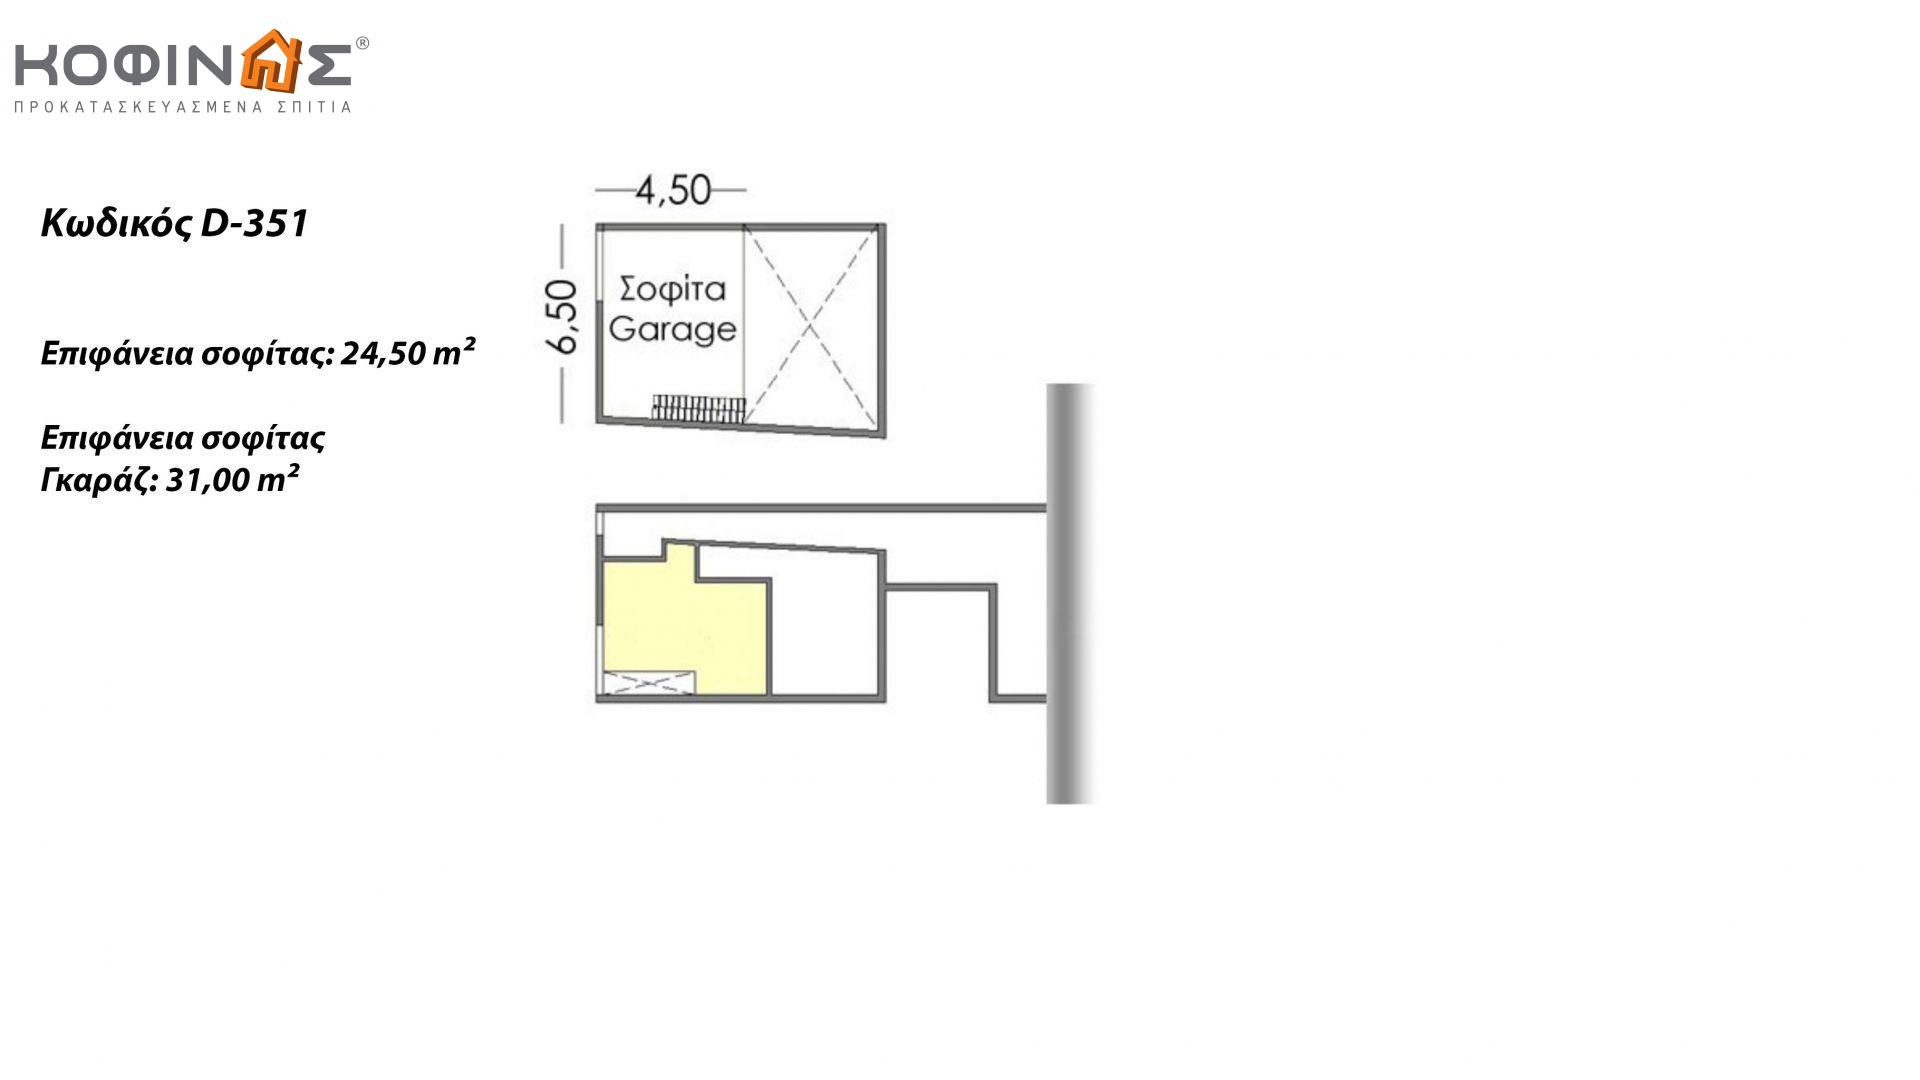 Διώροφη Κατοικία D-351, συνολικής επιφάνειας 351,80 τ.μ., +Γκαράζ 61.75 m²(=413.55 m²), συνολική επιφάνεια στεγασμένων χώρων 57.60 τ.μ., μπαλκόνια 26.00 τ.μ.